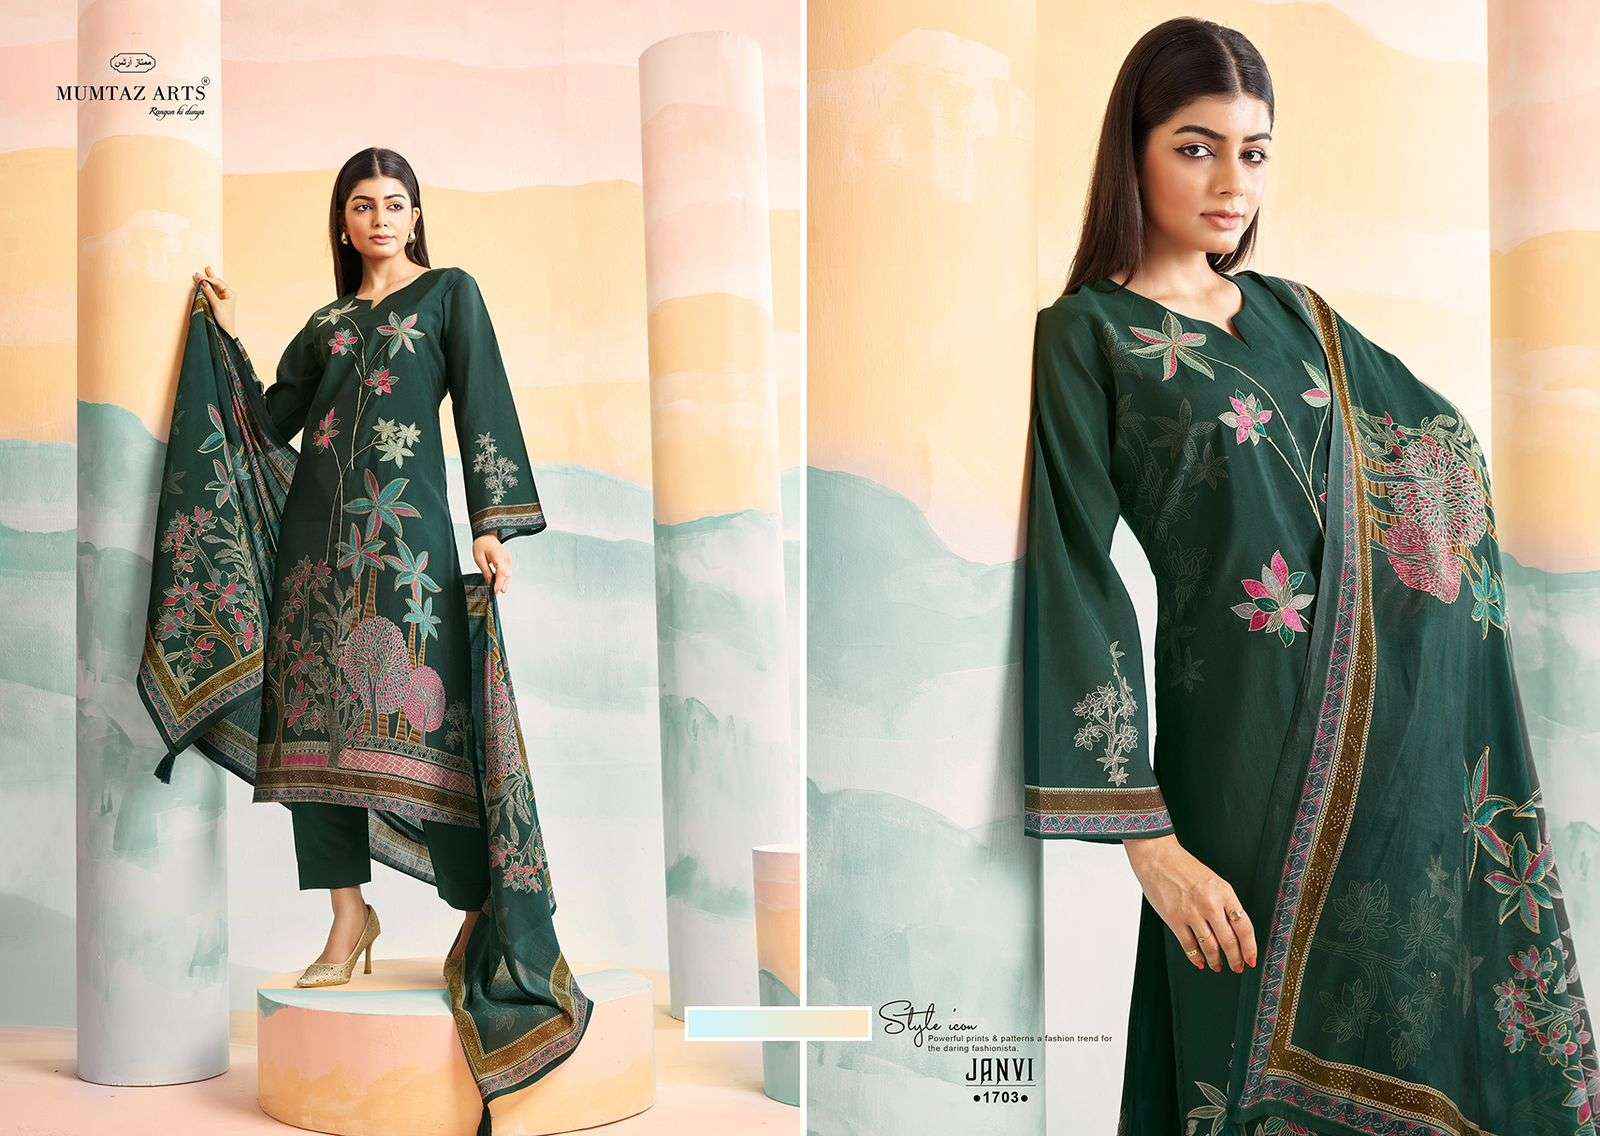  Mumtaz Arts Janvi Vol 2 Viscose Dress Material 4 pcs Catalogue